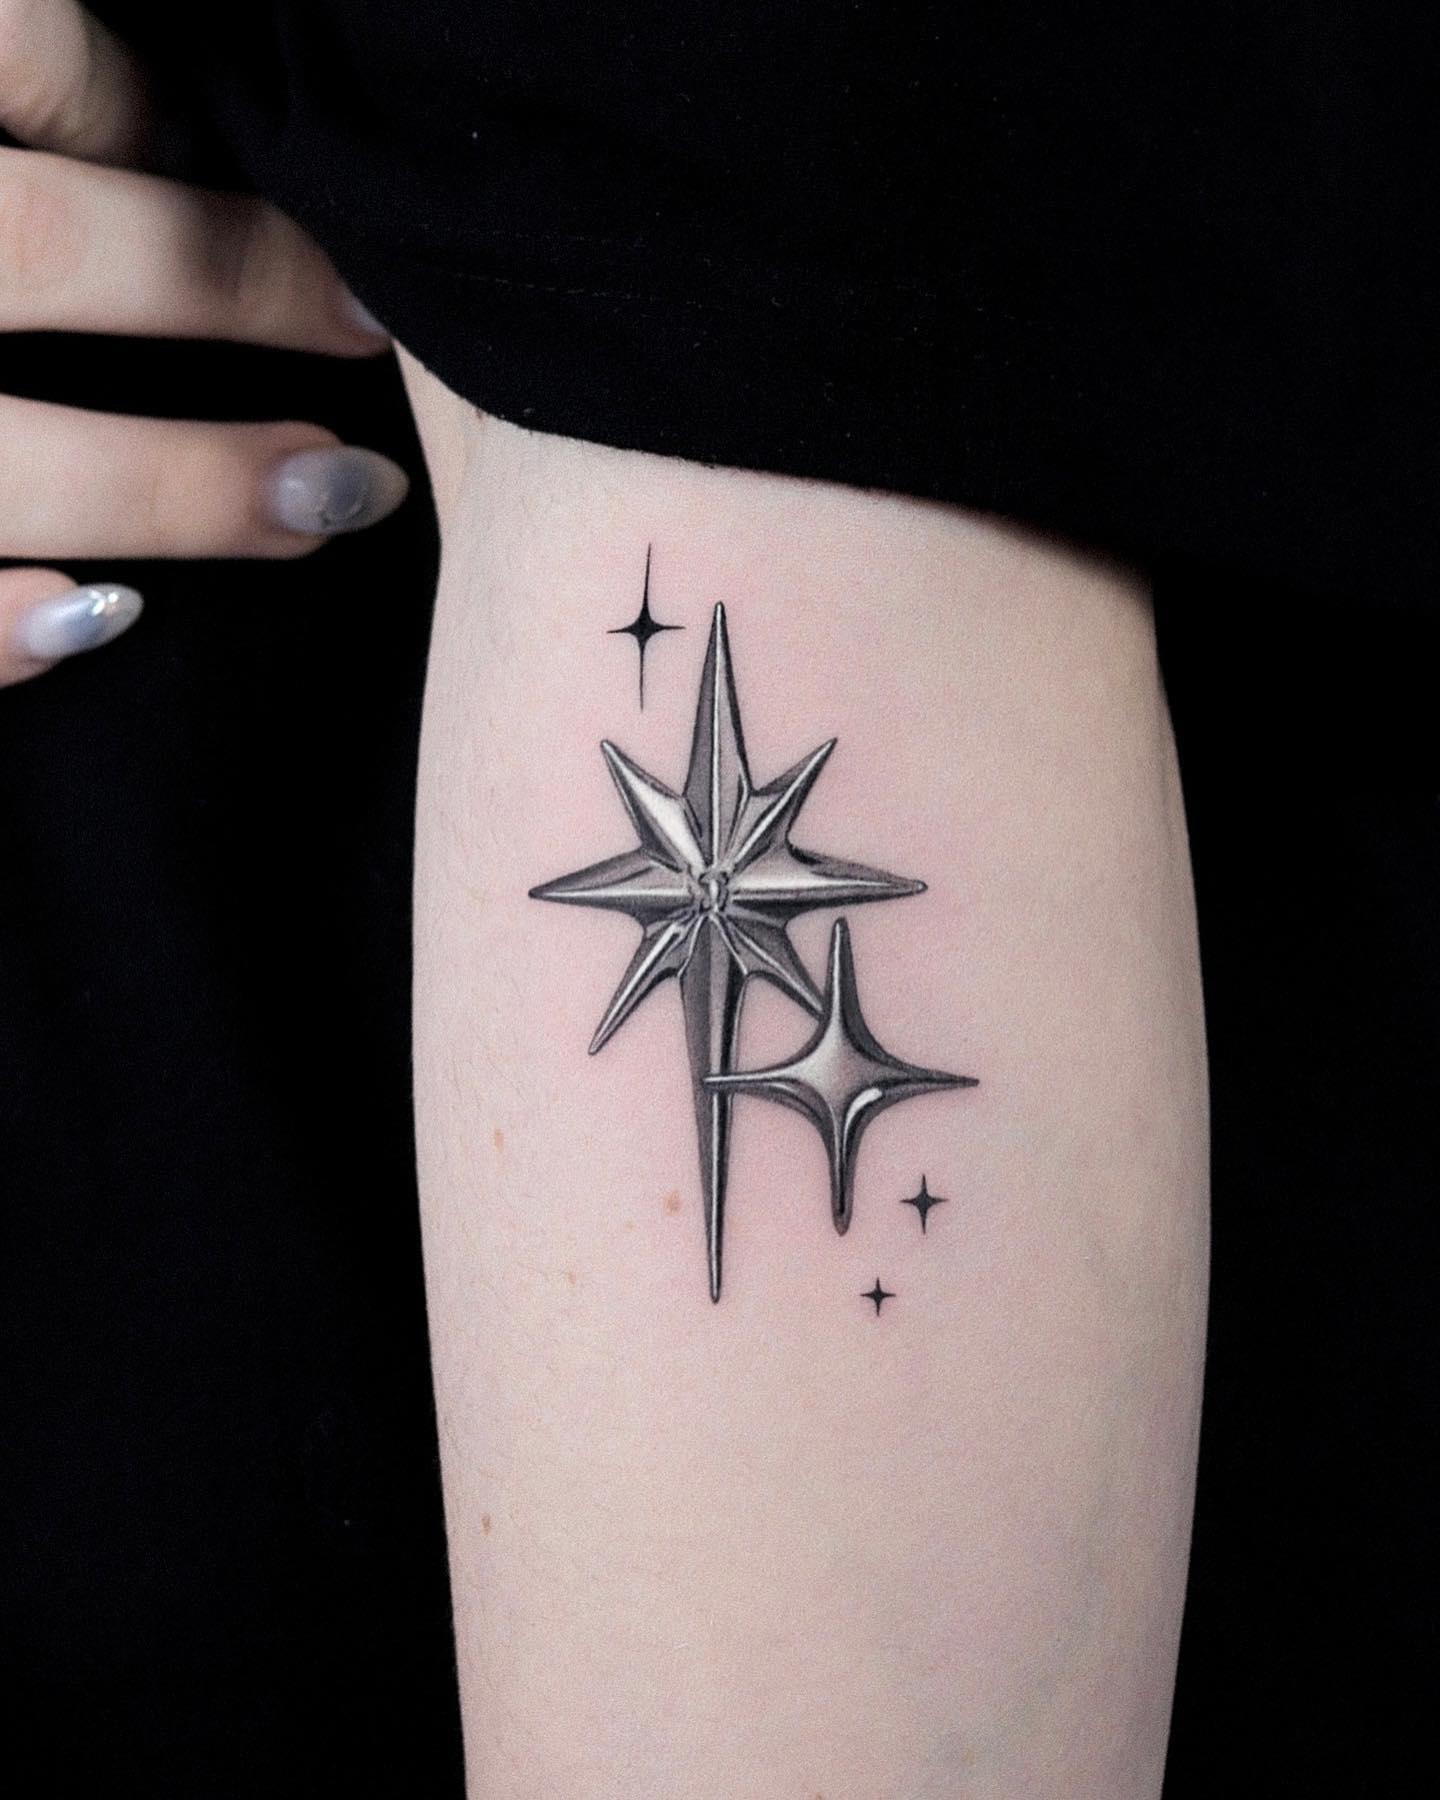 North Stars by Yoni TattooNOW